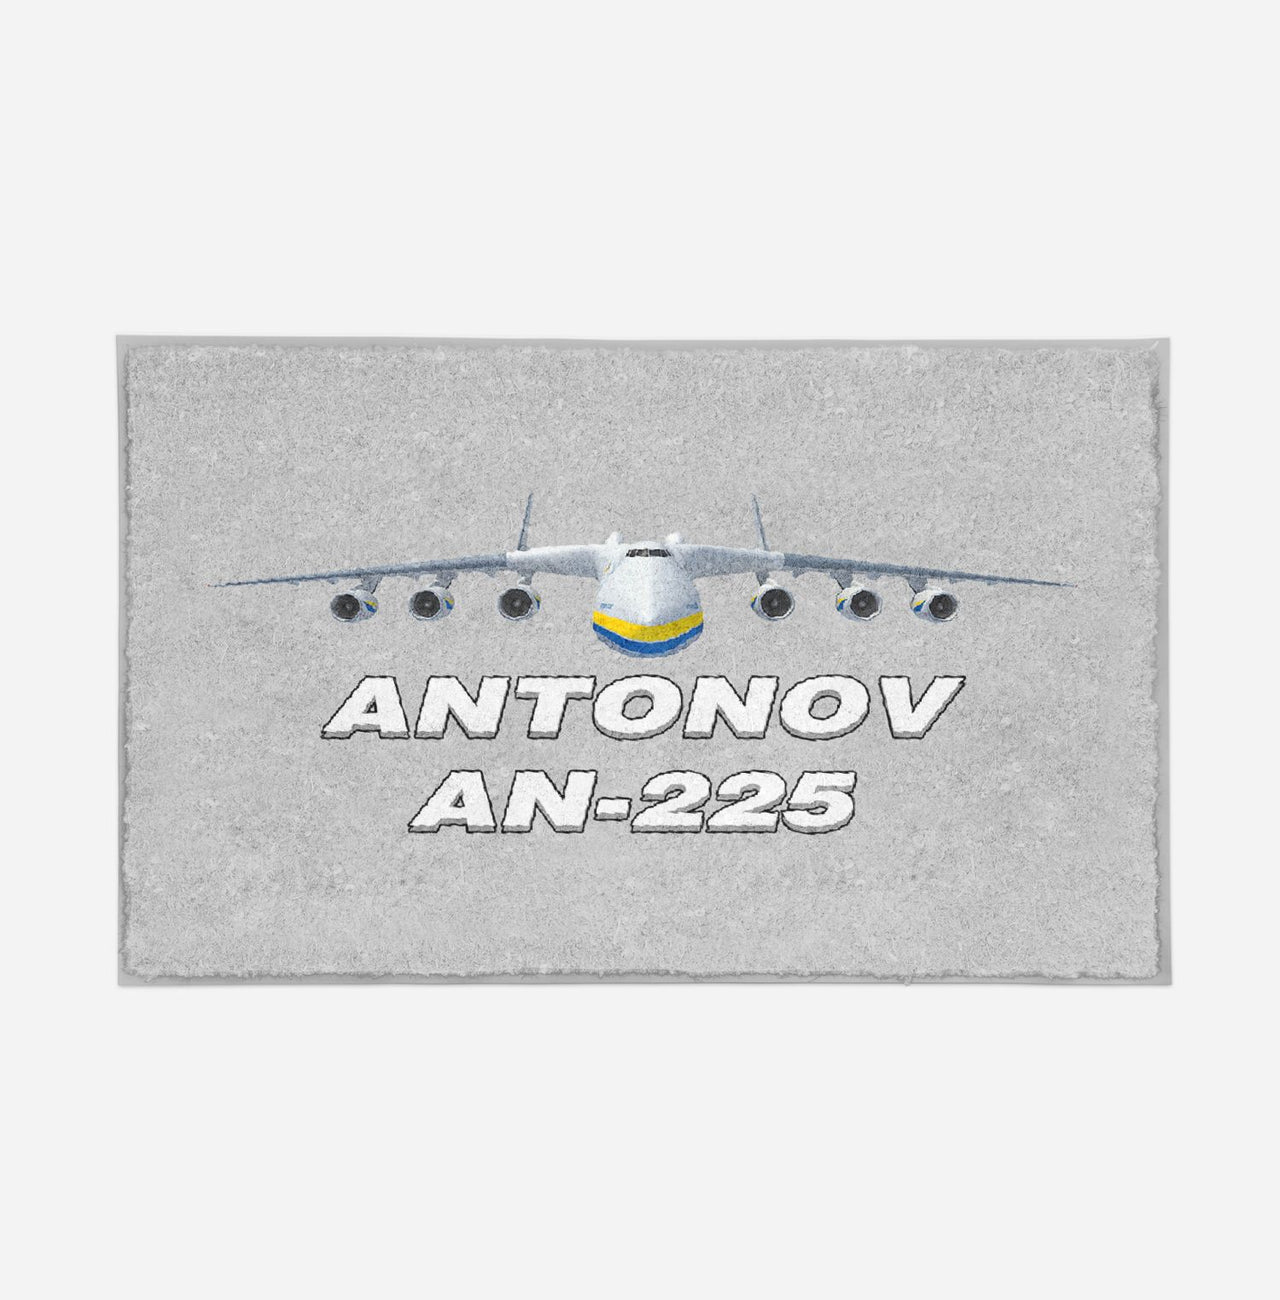 Antonov AN-225 (16) Designed Door Mats